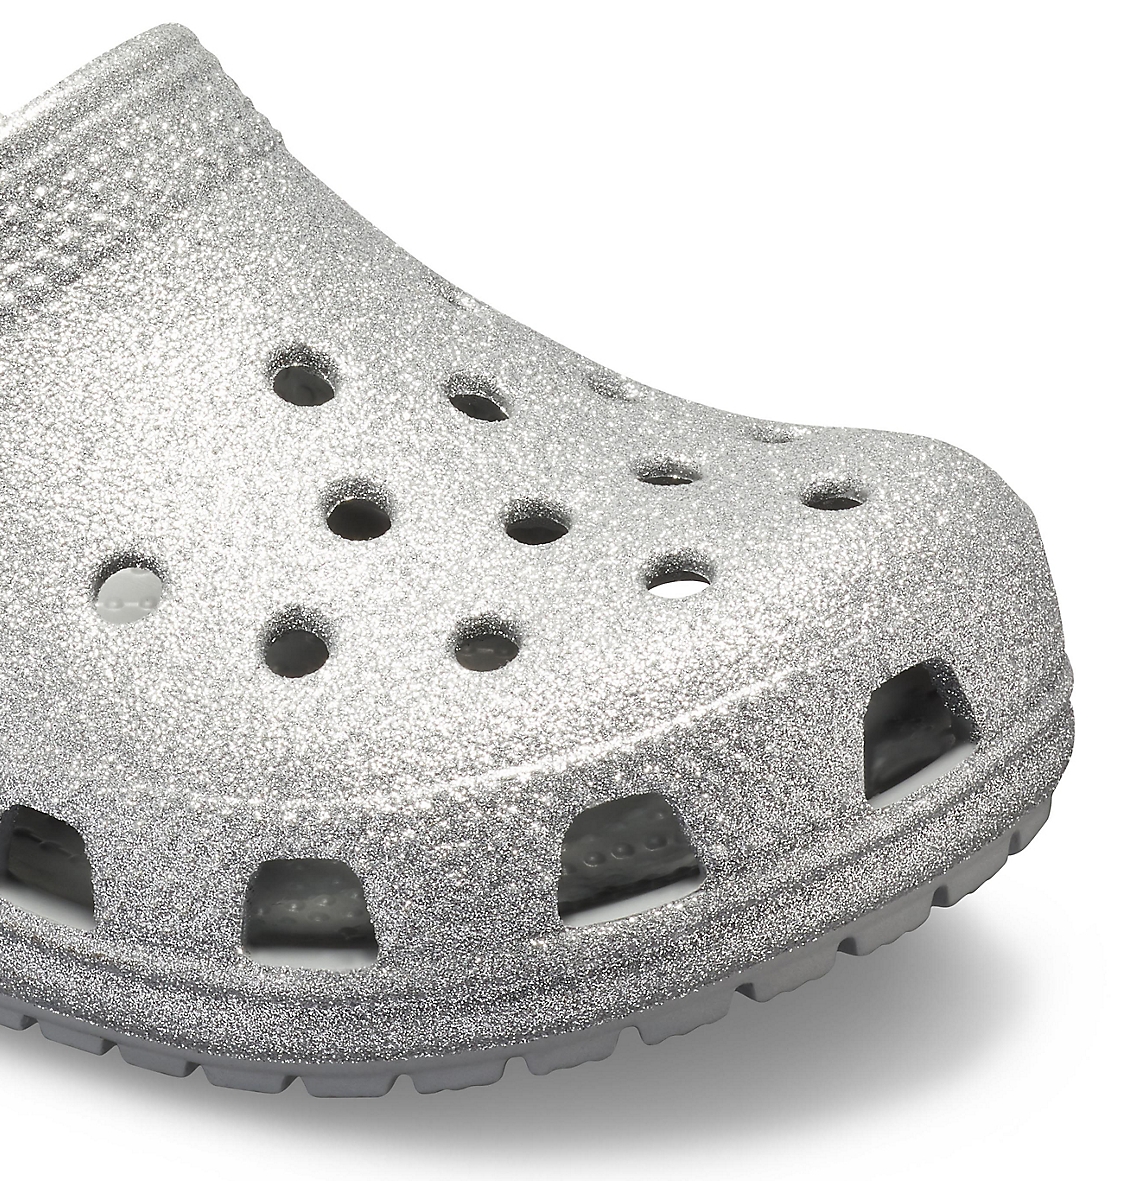 Dětské pantofle (nazouváky) Crocs Classic Glitter Clog Kids v originálním provedení s flitry